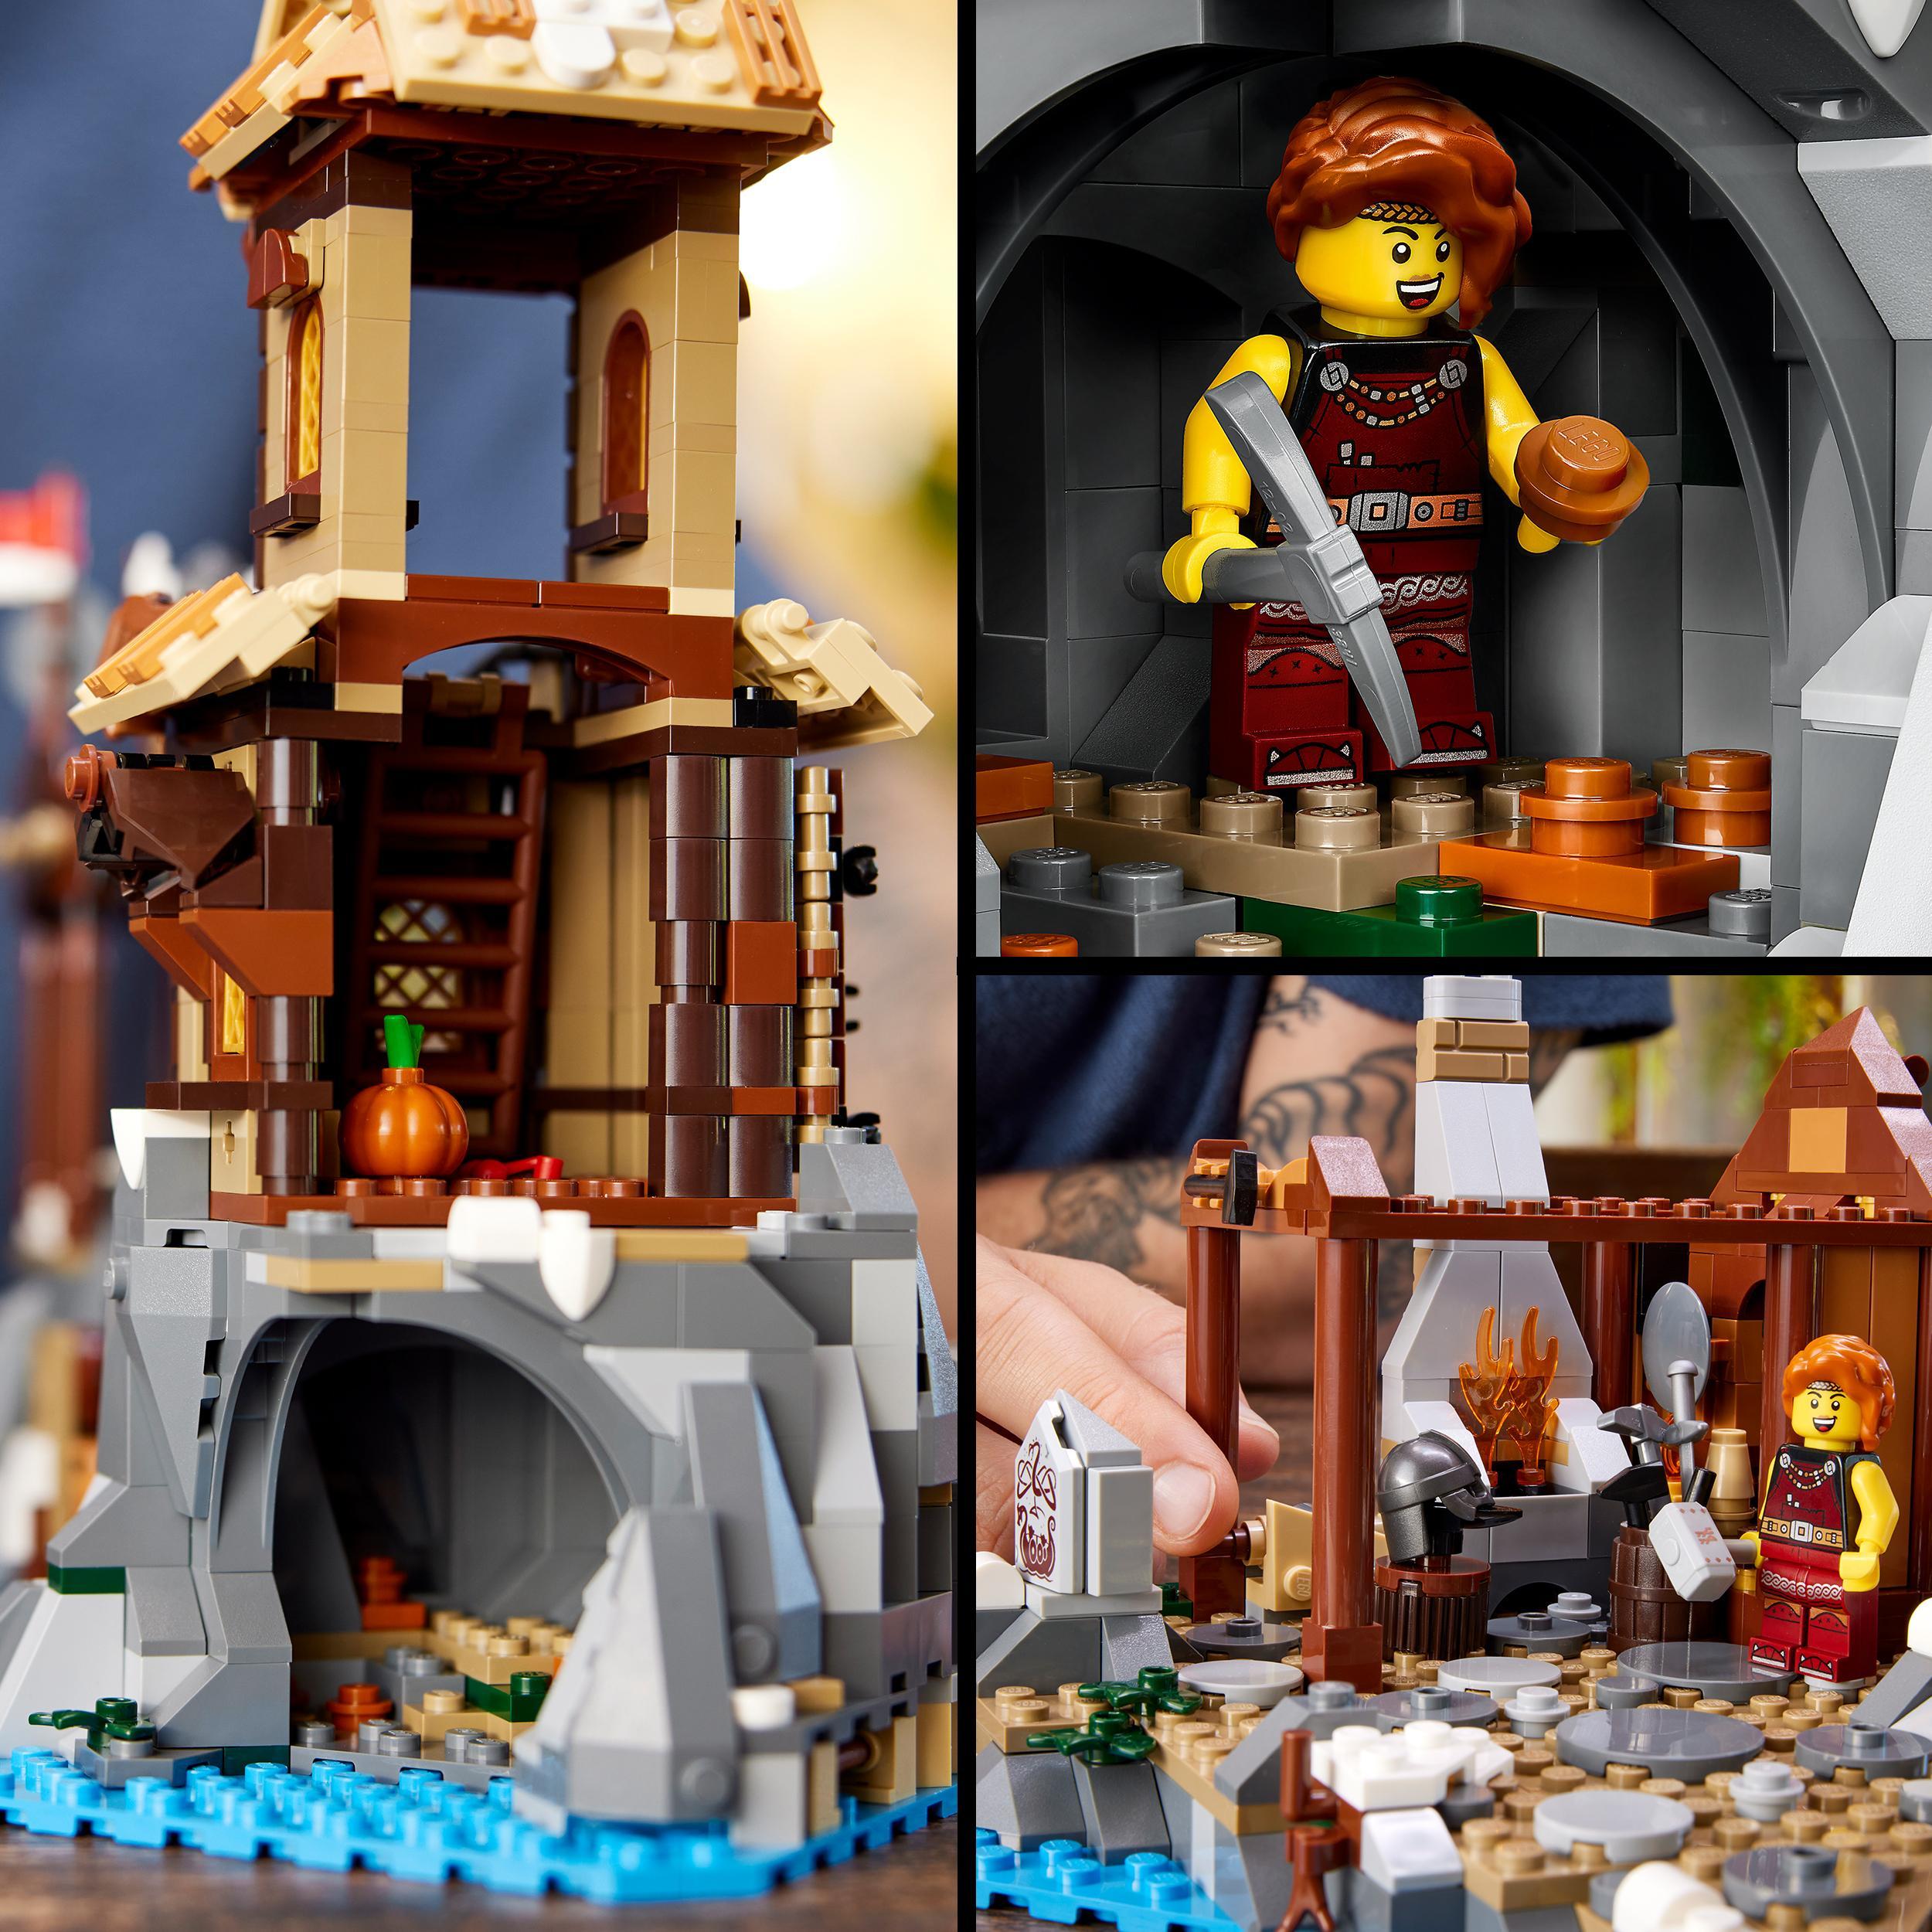 Lego ideas 21343 villaggio vichingo, kit modellismo per adulti da costruire, grande set idea regalo uomo, donna, lui e lei - LEGO IDEAS